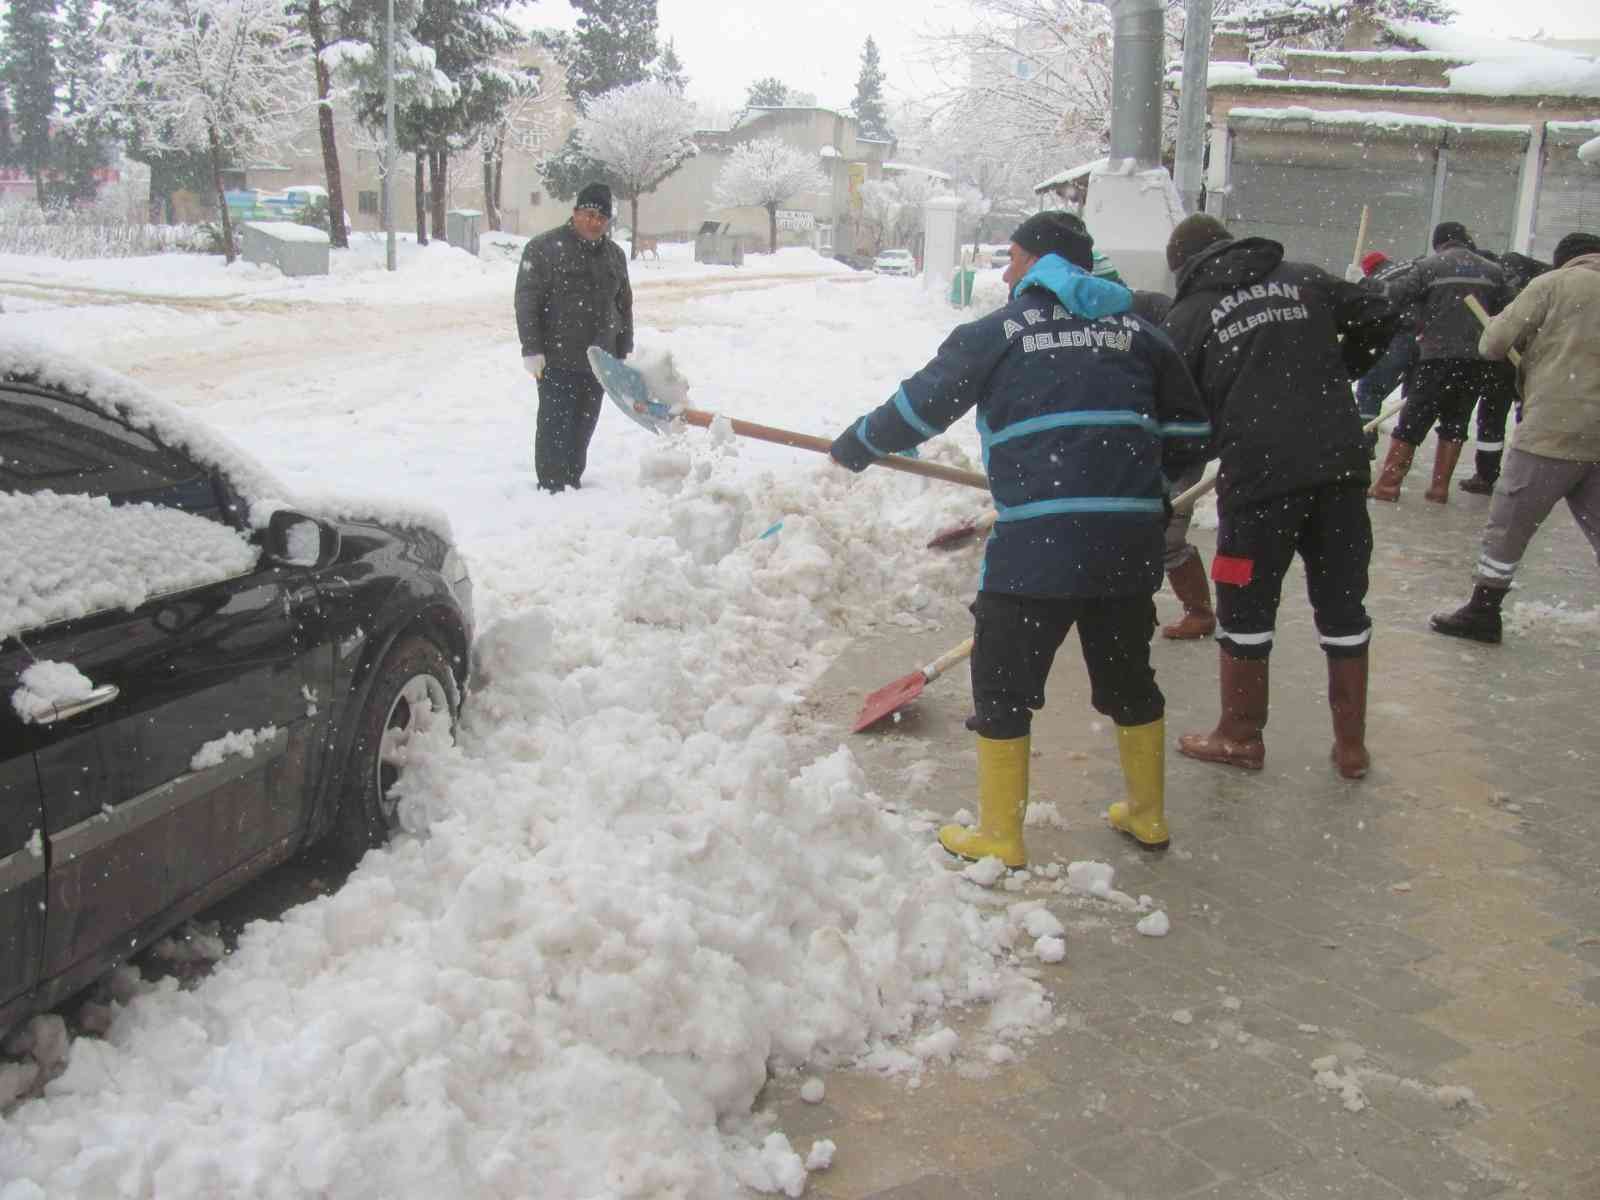 Son 54 yılın en etkili kar yağışında karla mücadele sürüyor #gaziantep